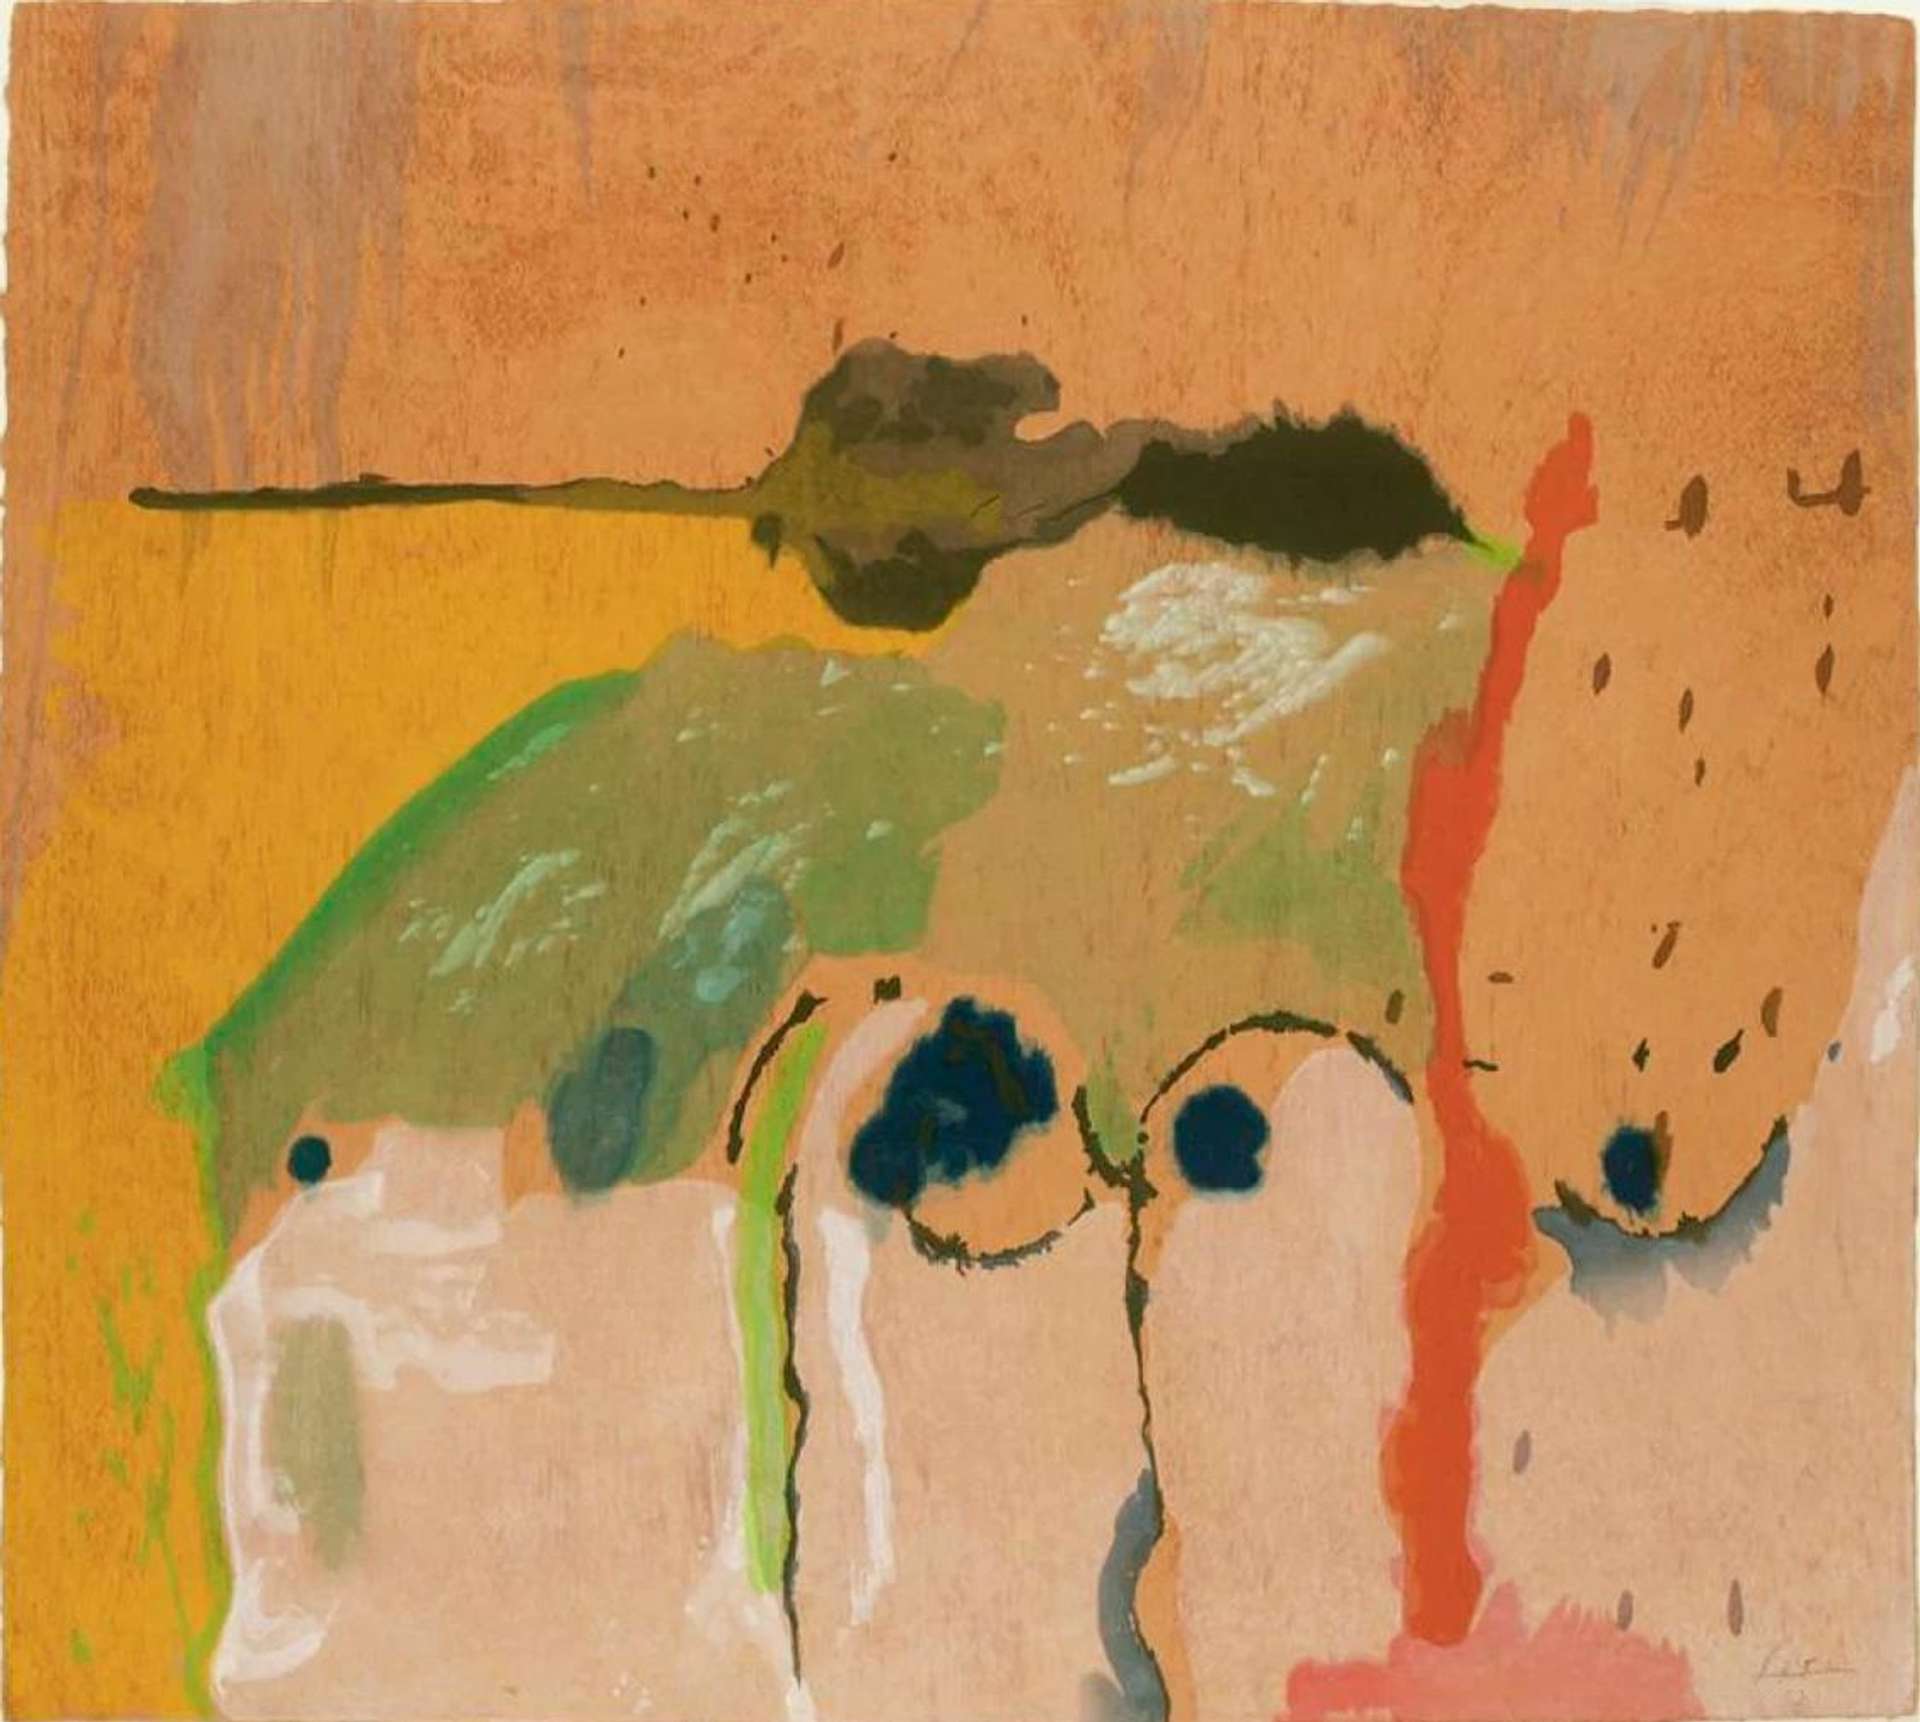 A Buyer’s Guide To Helen Frankenthaler